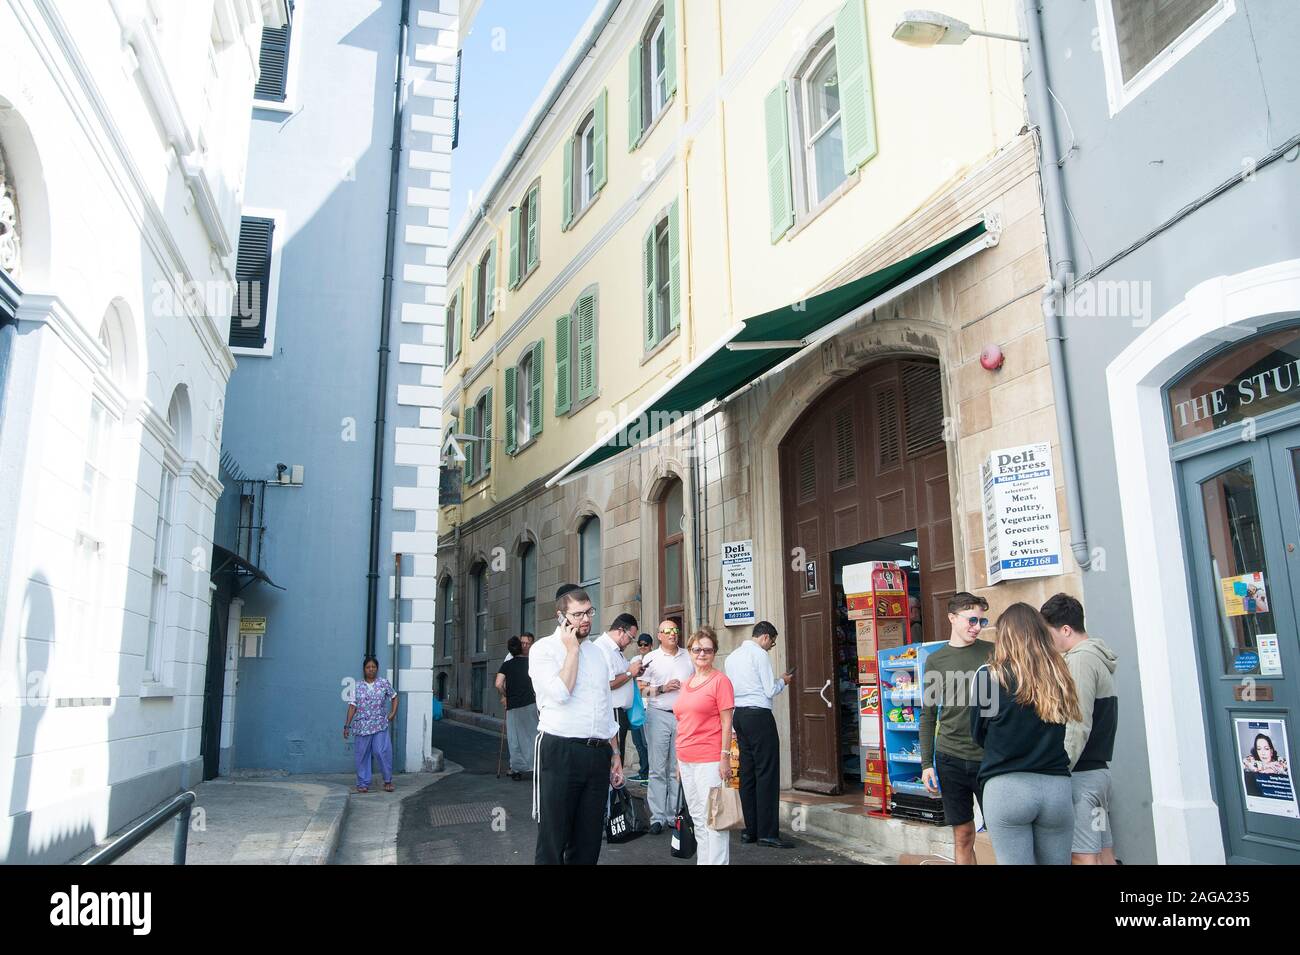 Regno Unito, Gibilterra: Gibilterra ospita una grande comunità ebraica e diverse sinagoghe. Foto Stock